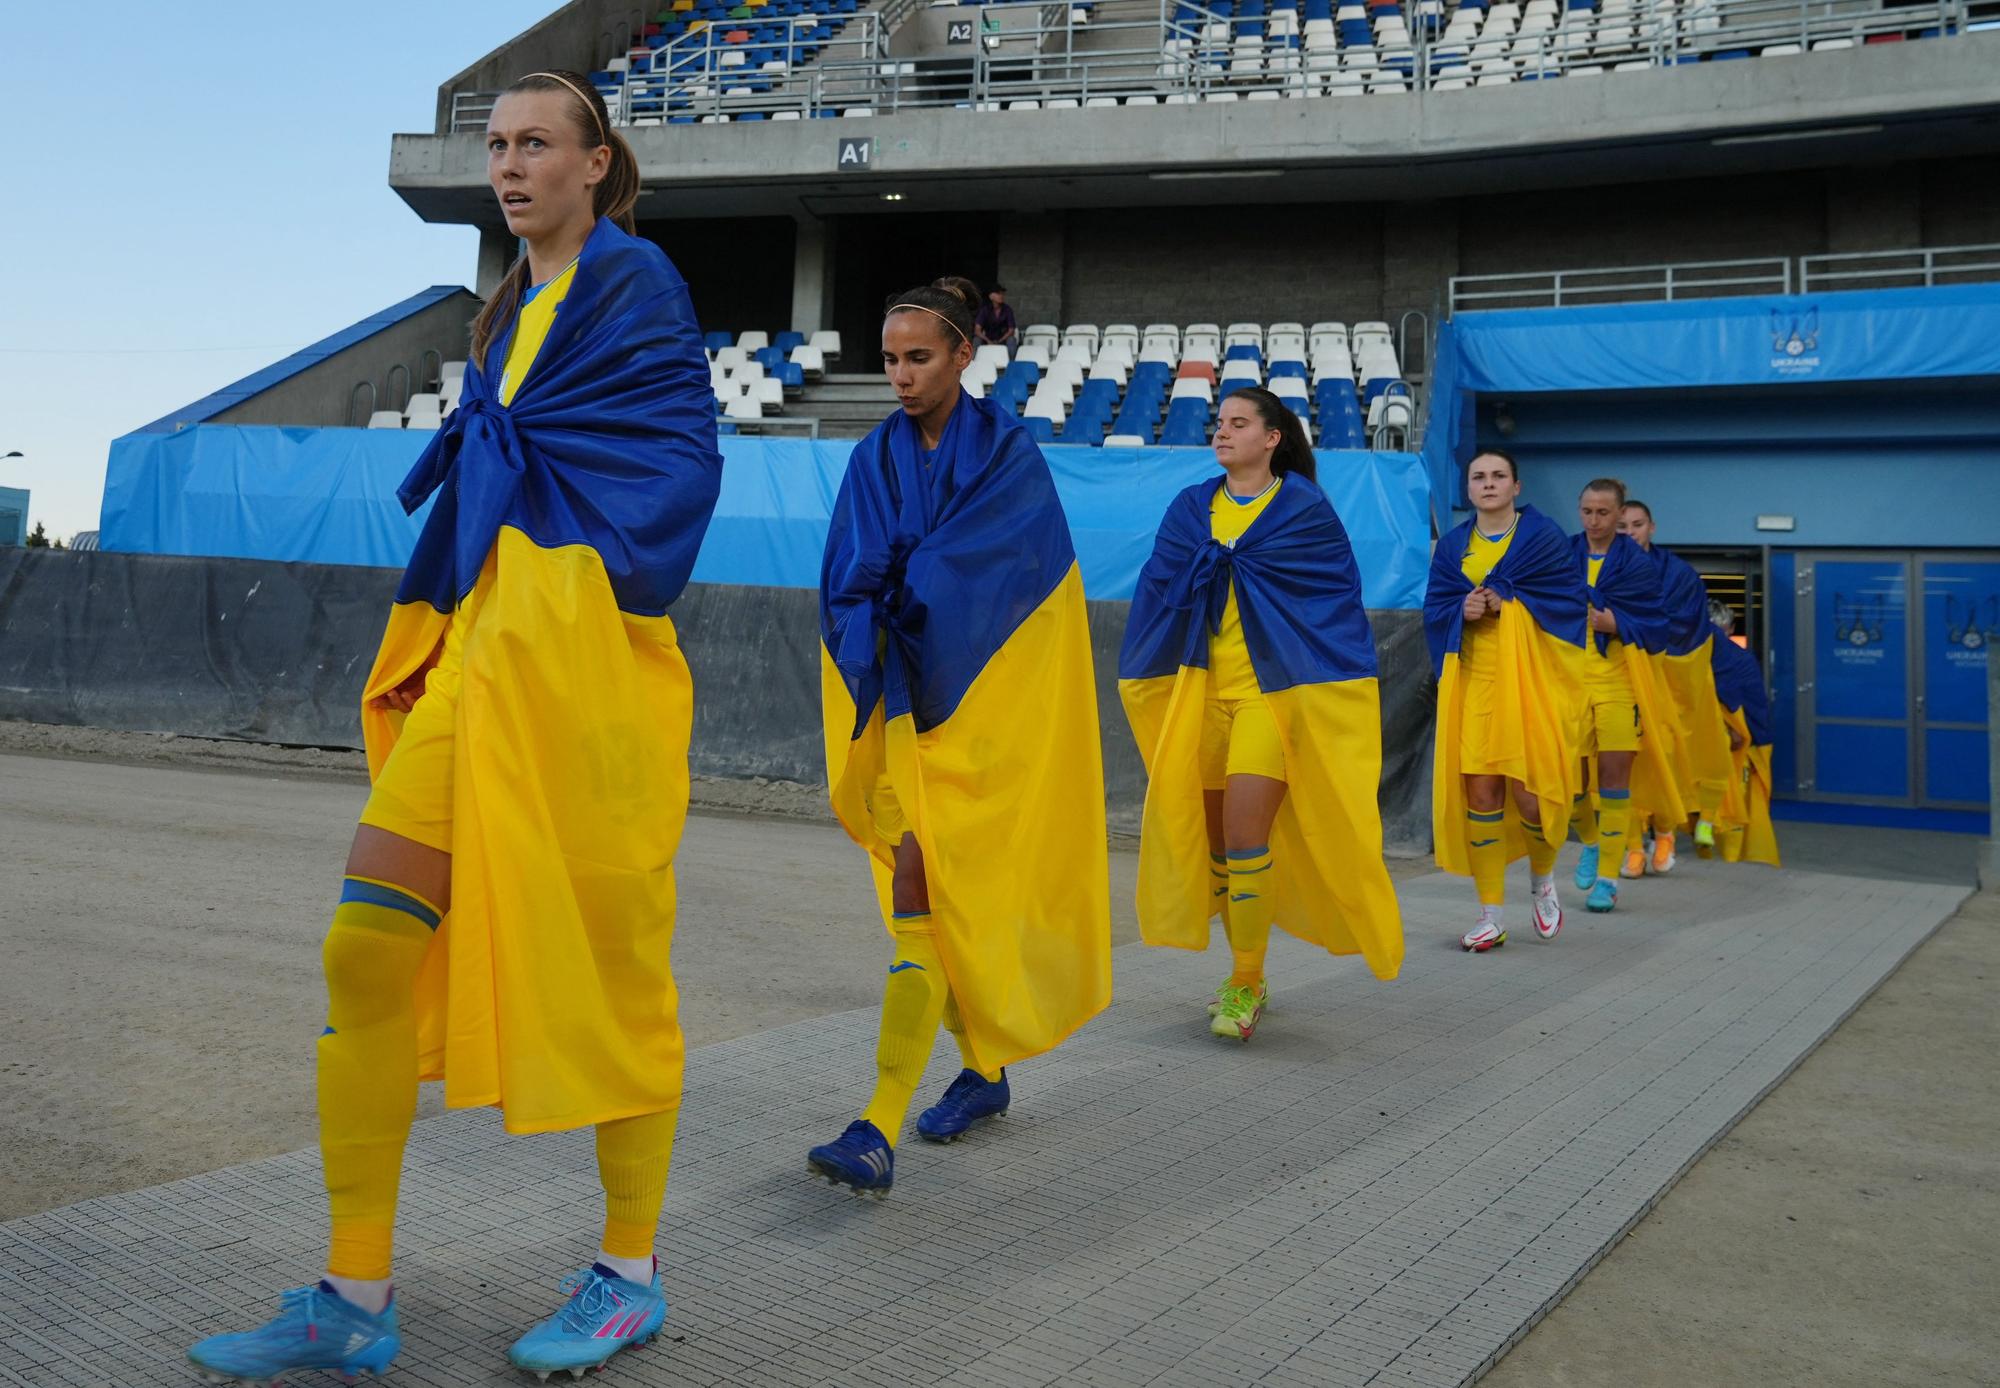 Women's World Cup - UEFA Qualifiers - Ukraine v Scotland